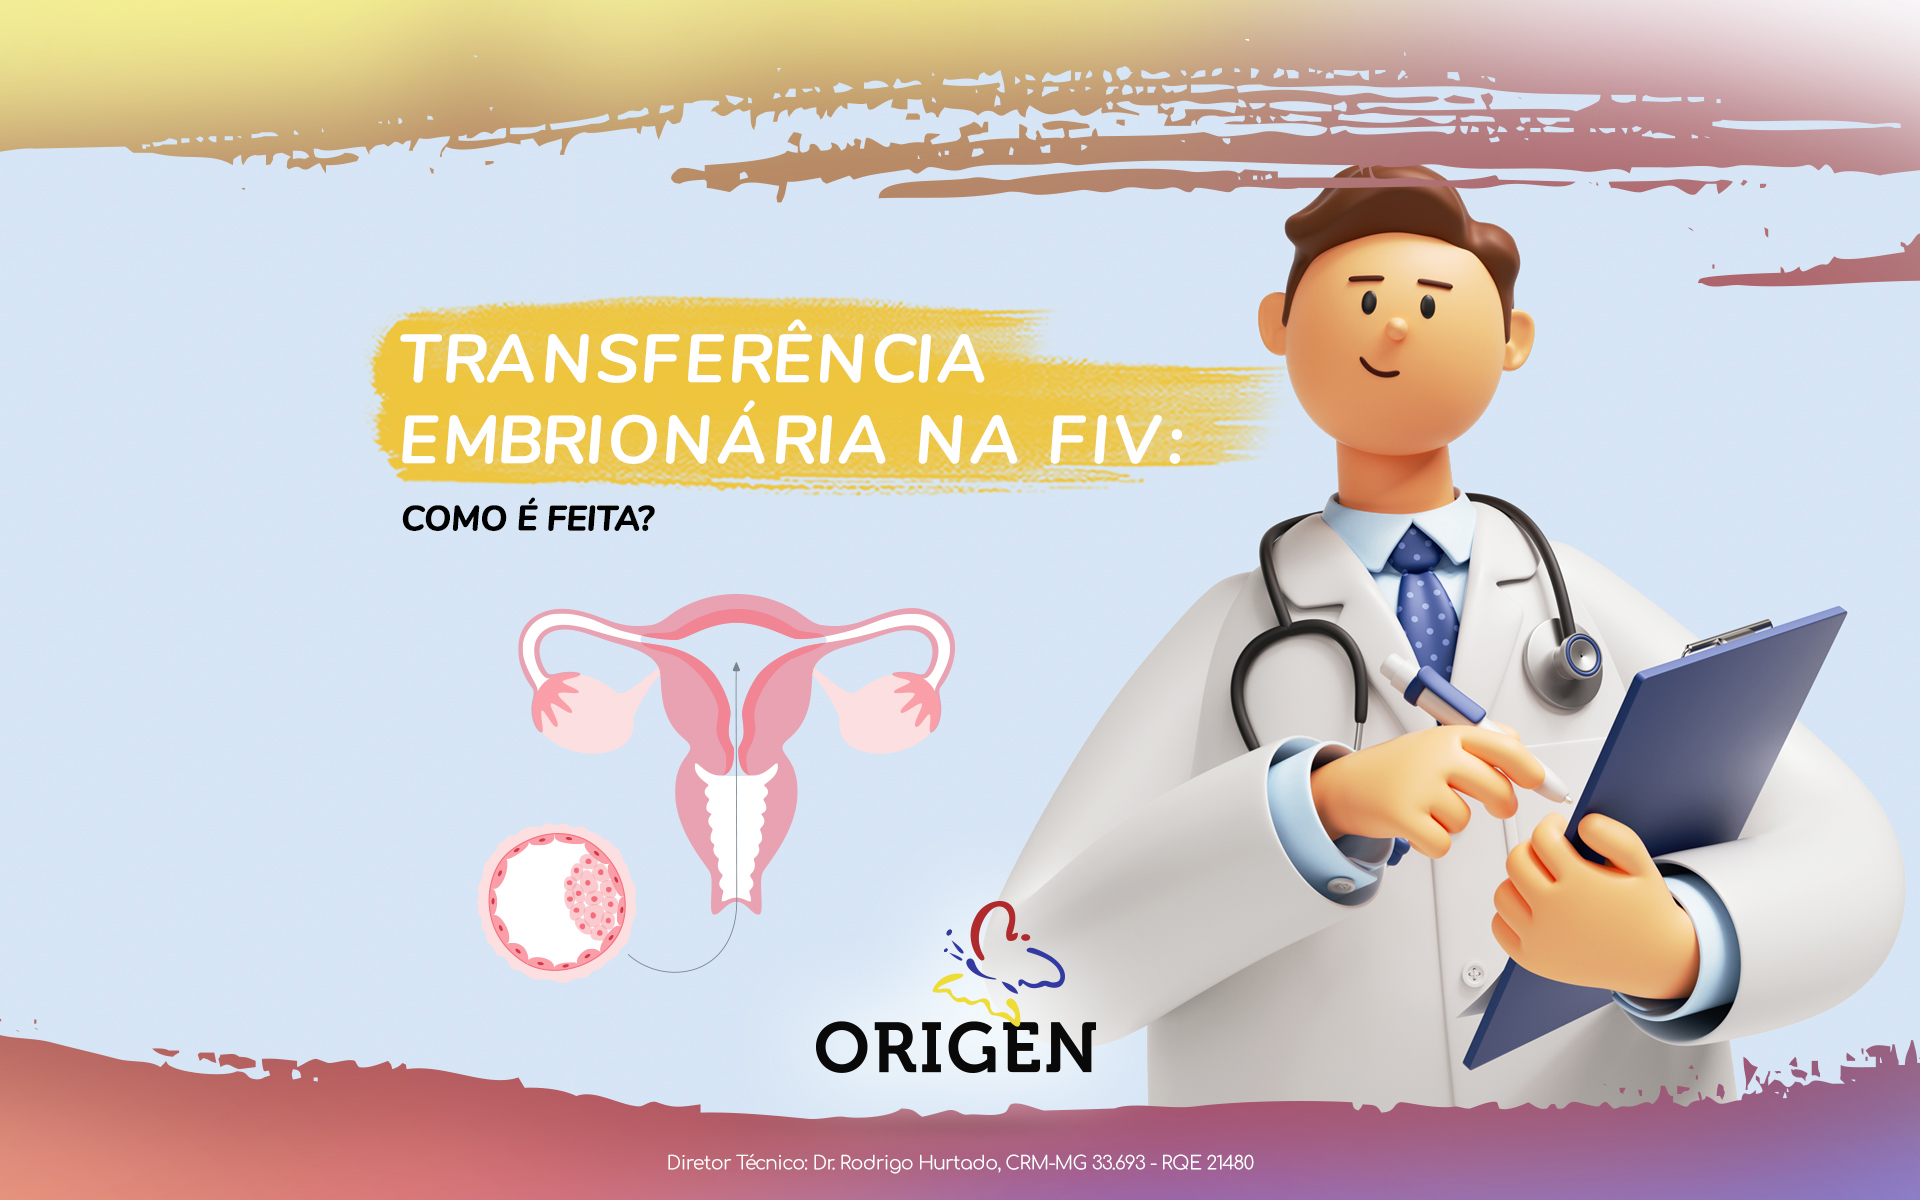 Transferência embrionária na FIV: como é feita?